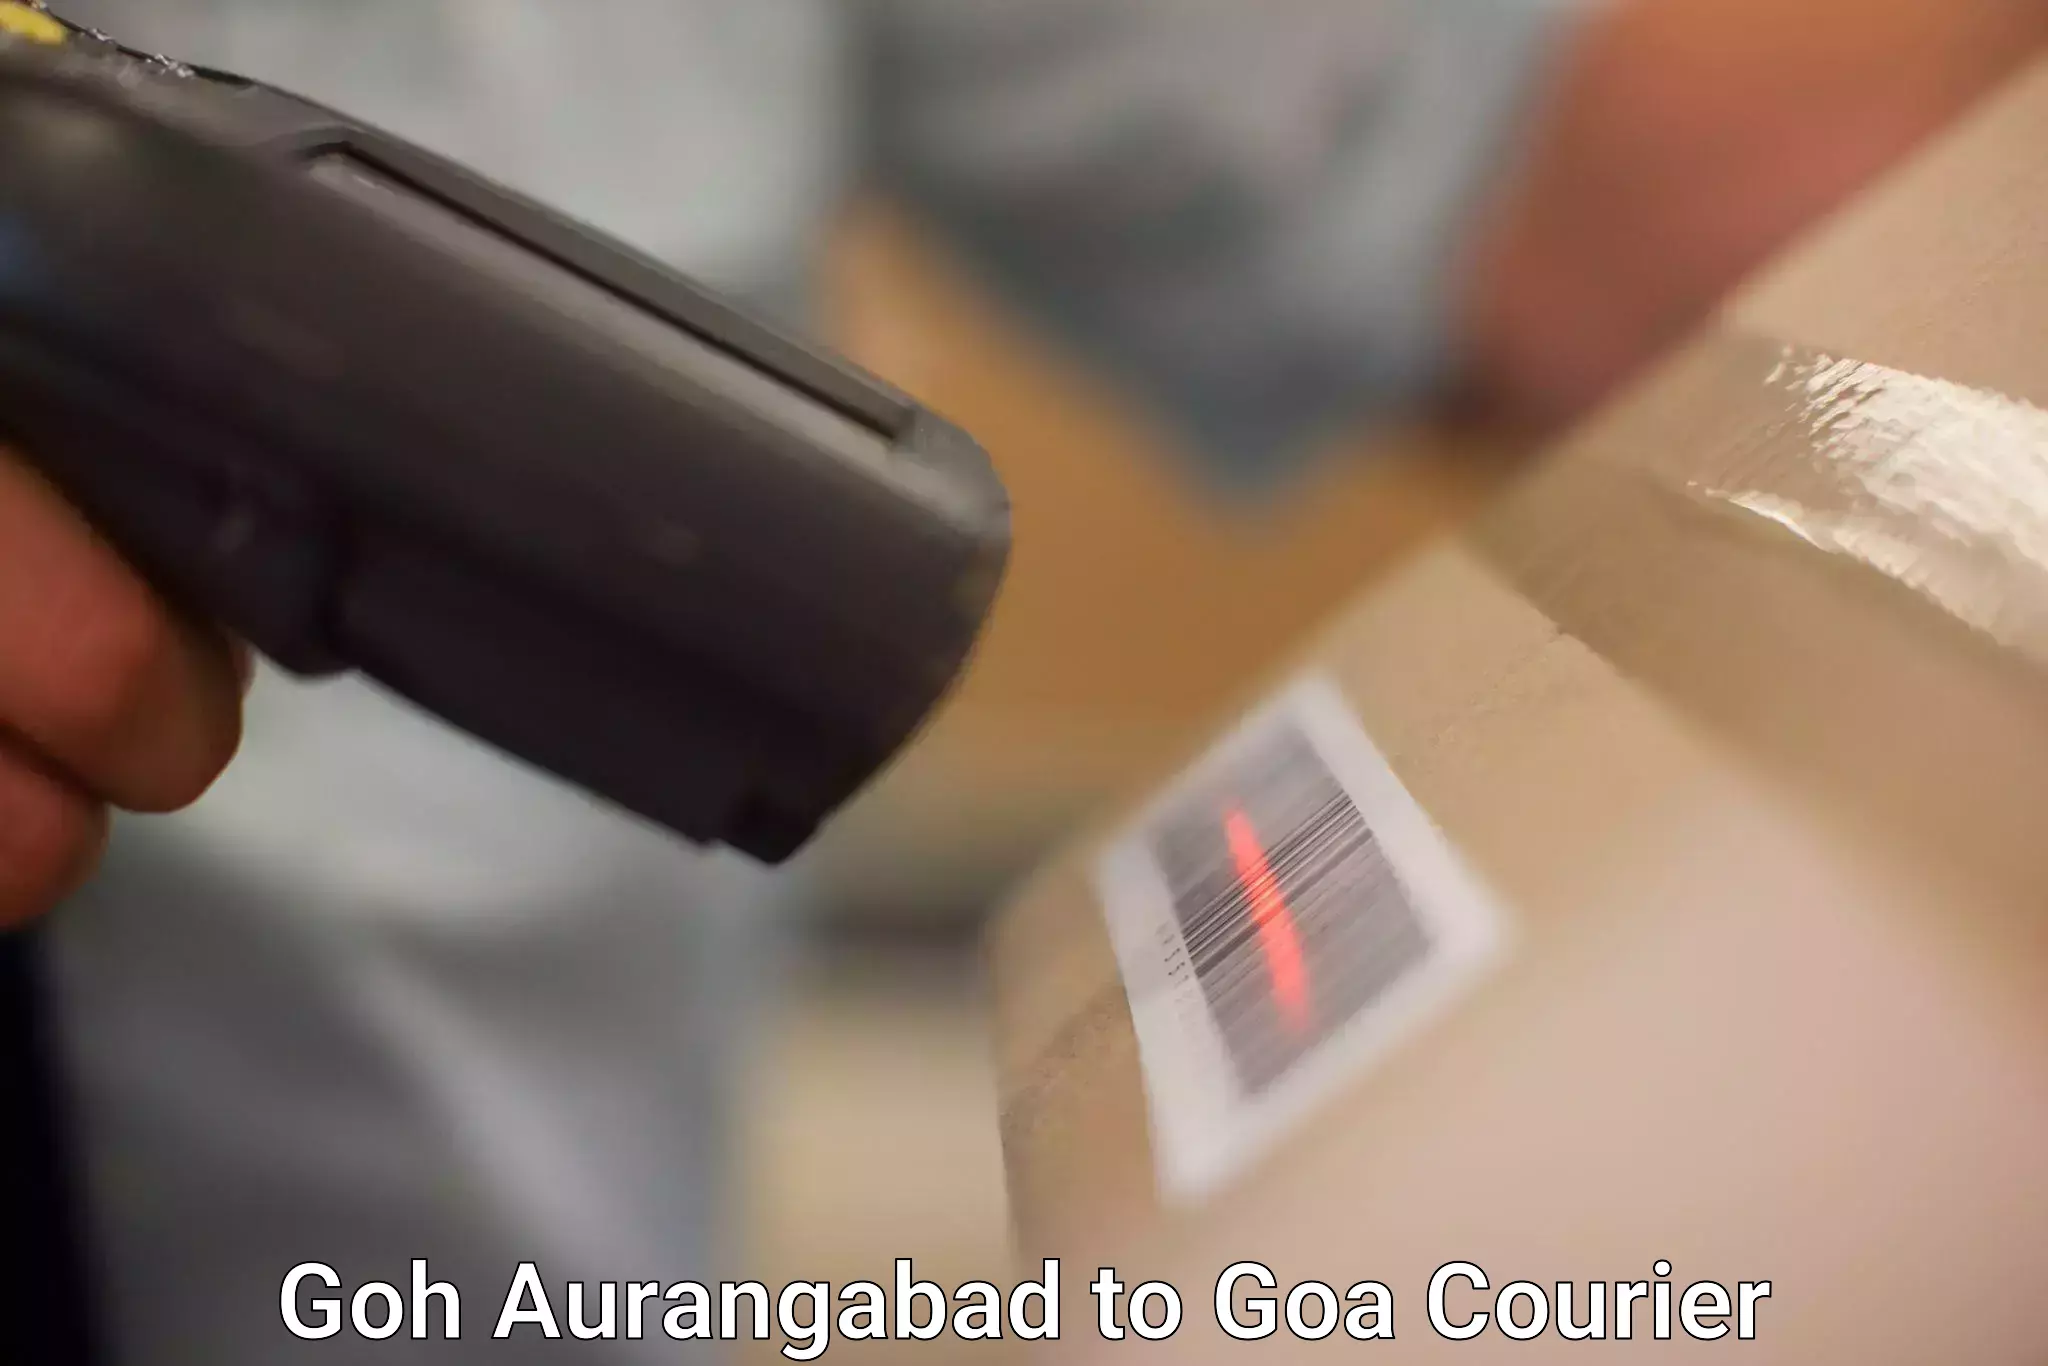 Nationwide shipping services Goh Aurangabad to Goa University